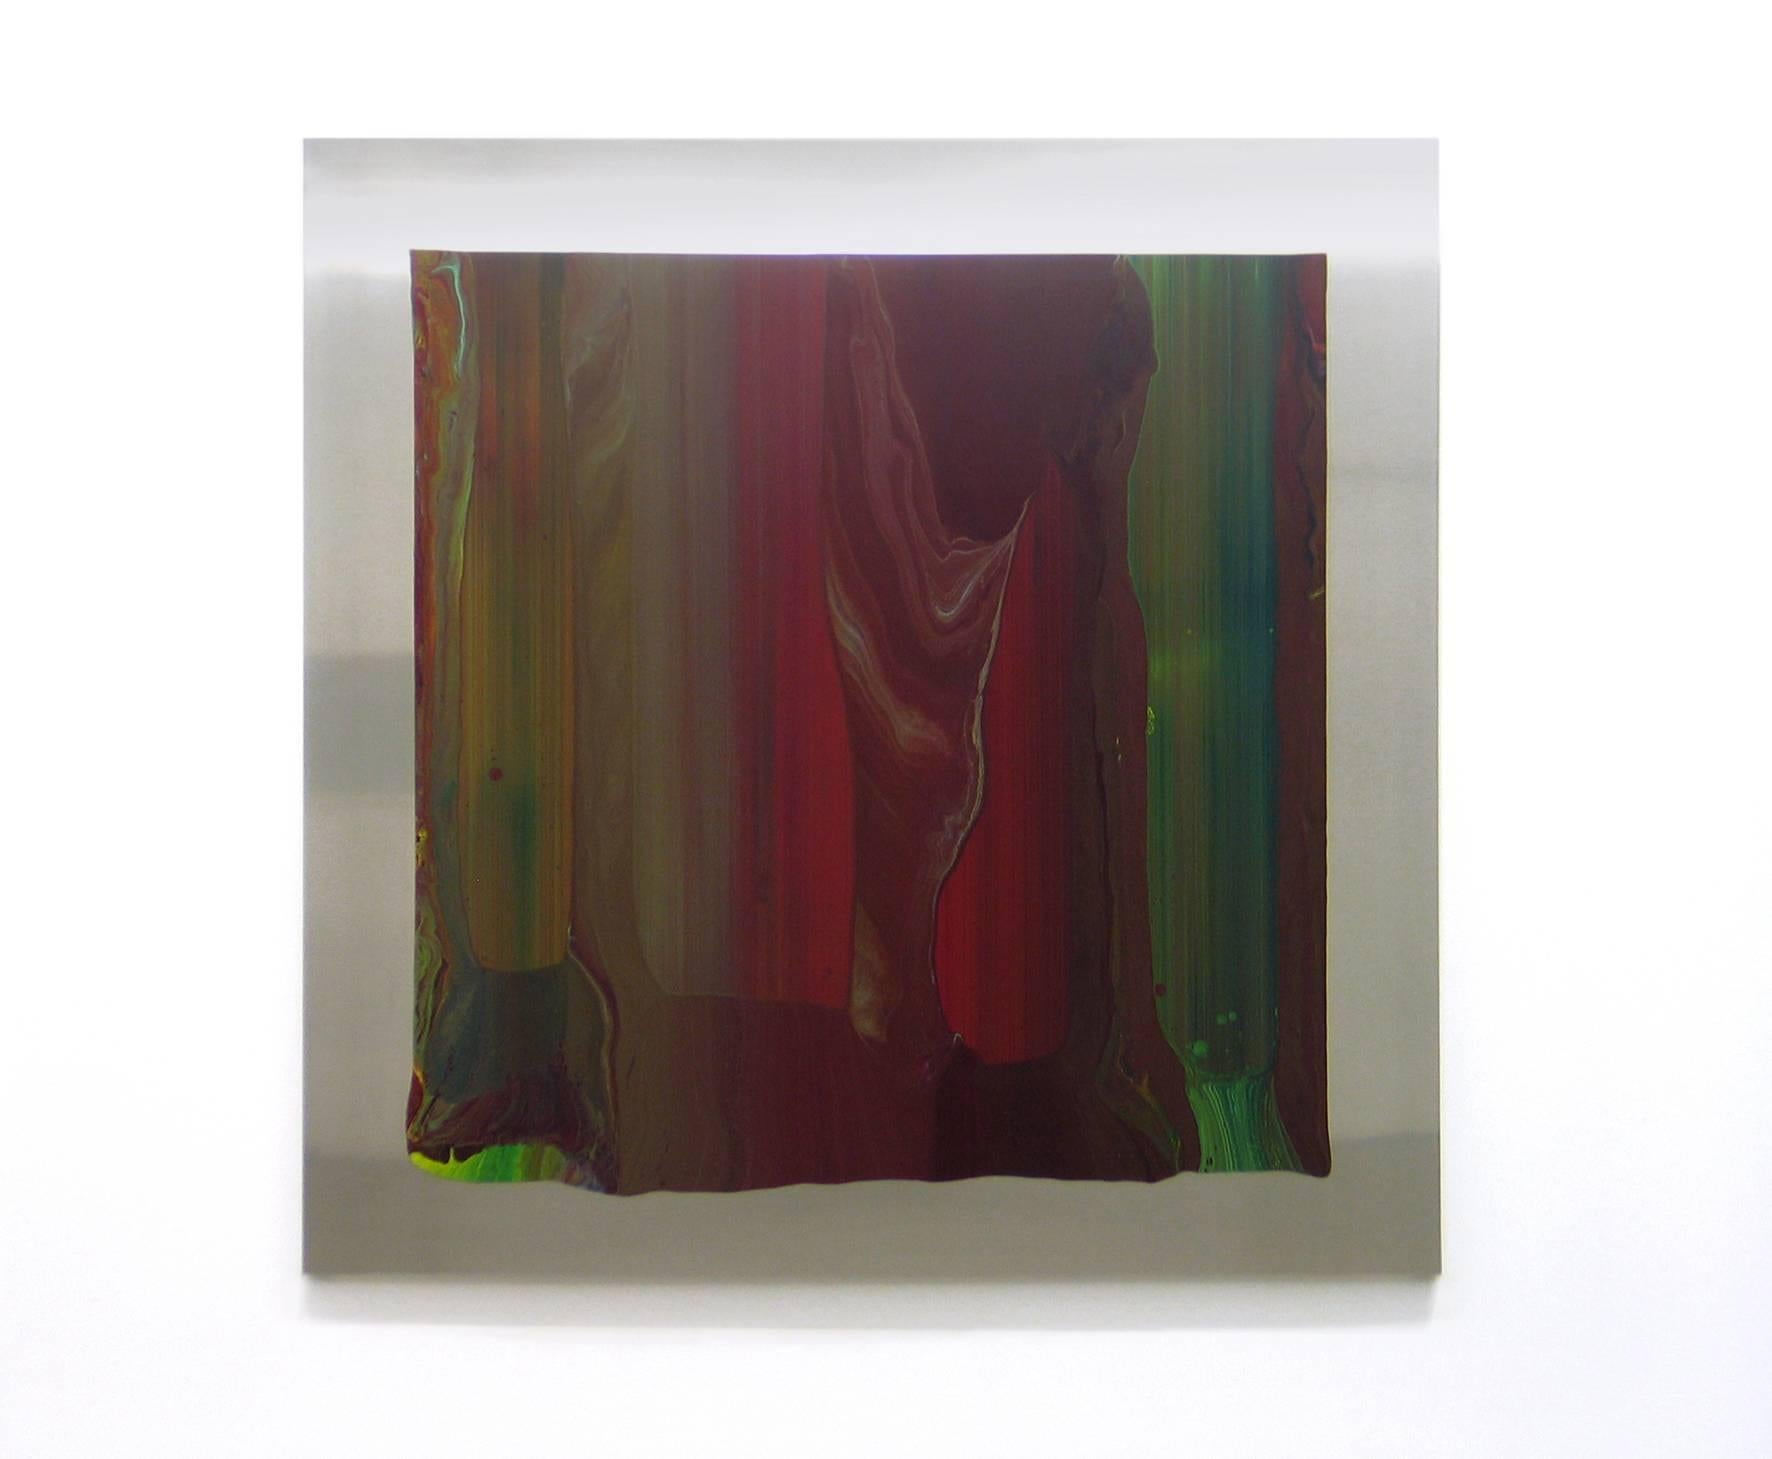 a112007-3 est une peinture sur aluminium de l'artiste contemporain Ahn Hyun-Ju qui fait partie de la série "Unfolded Lines". Dans cette série d'œuvres abstraites, l'artiste travaille avec des couleurs vibrantes dans de grands aplats de peinture tout